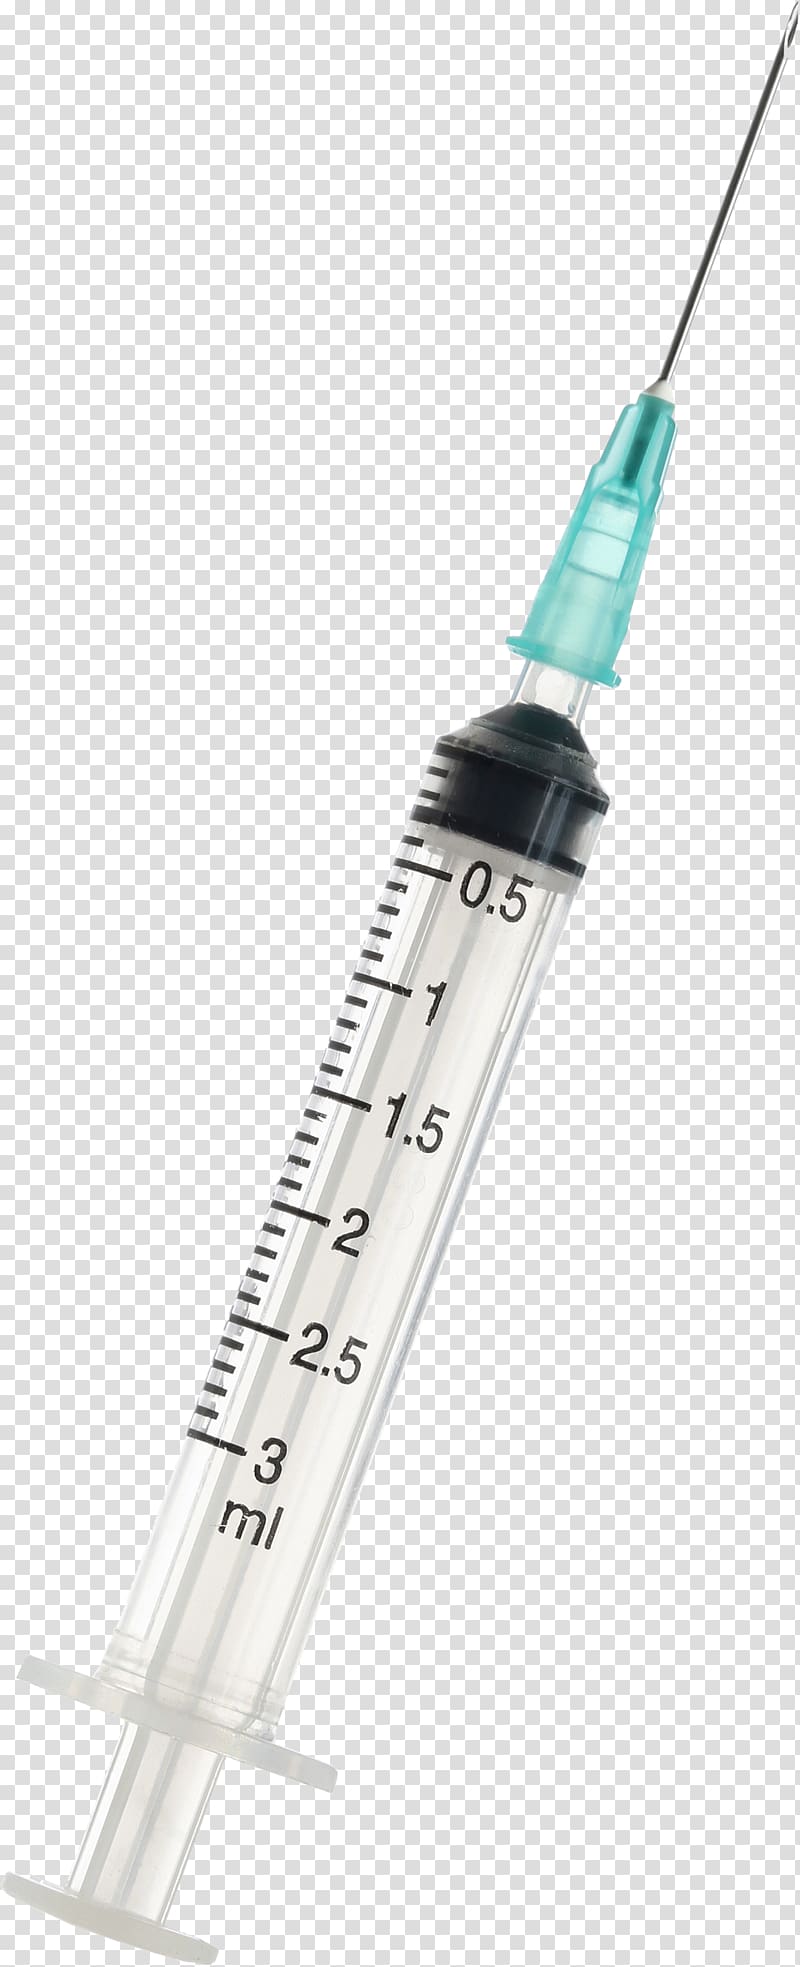 Syringe transparent background PNG clipart